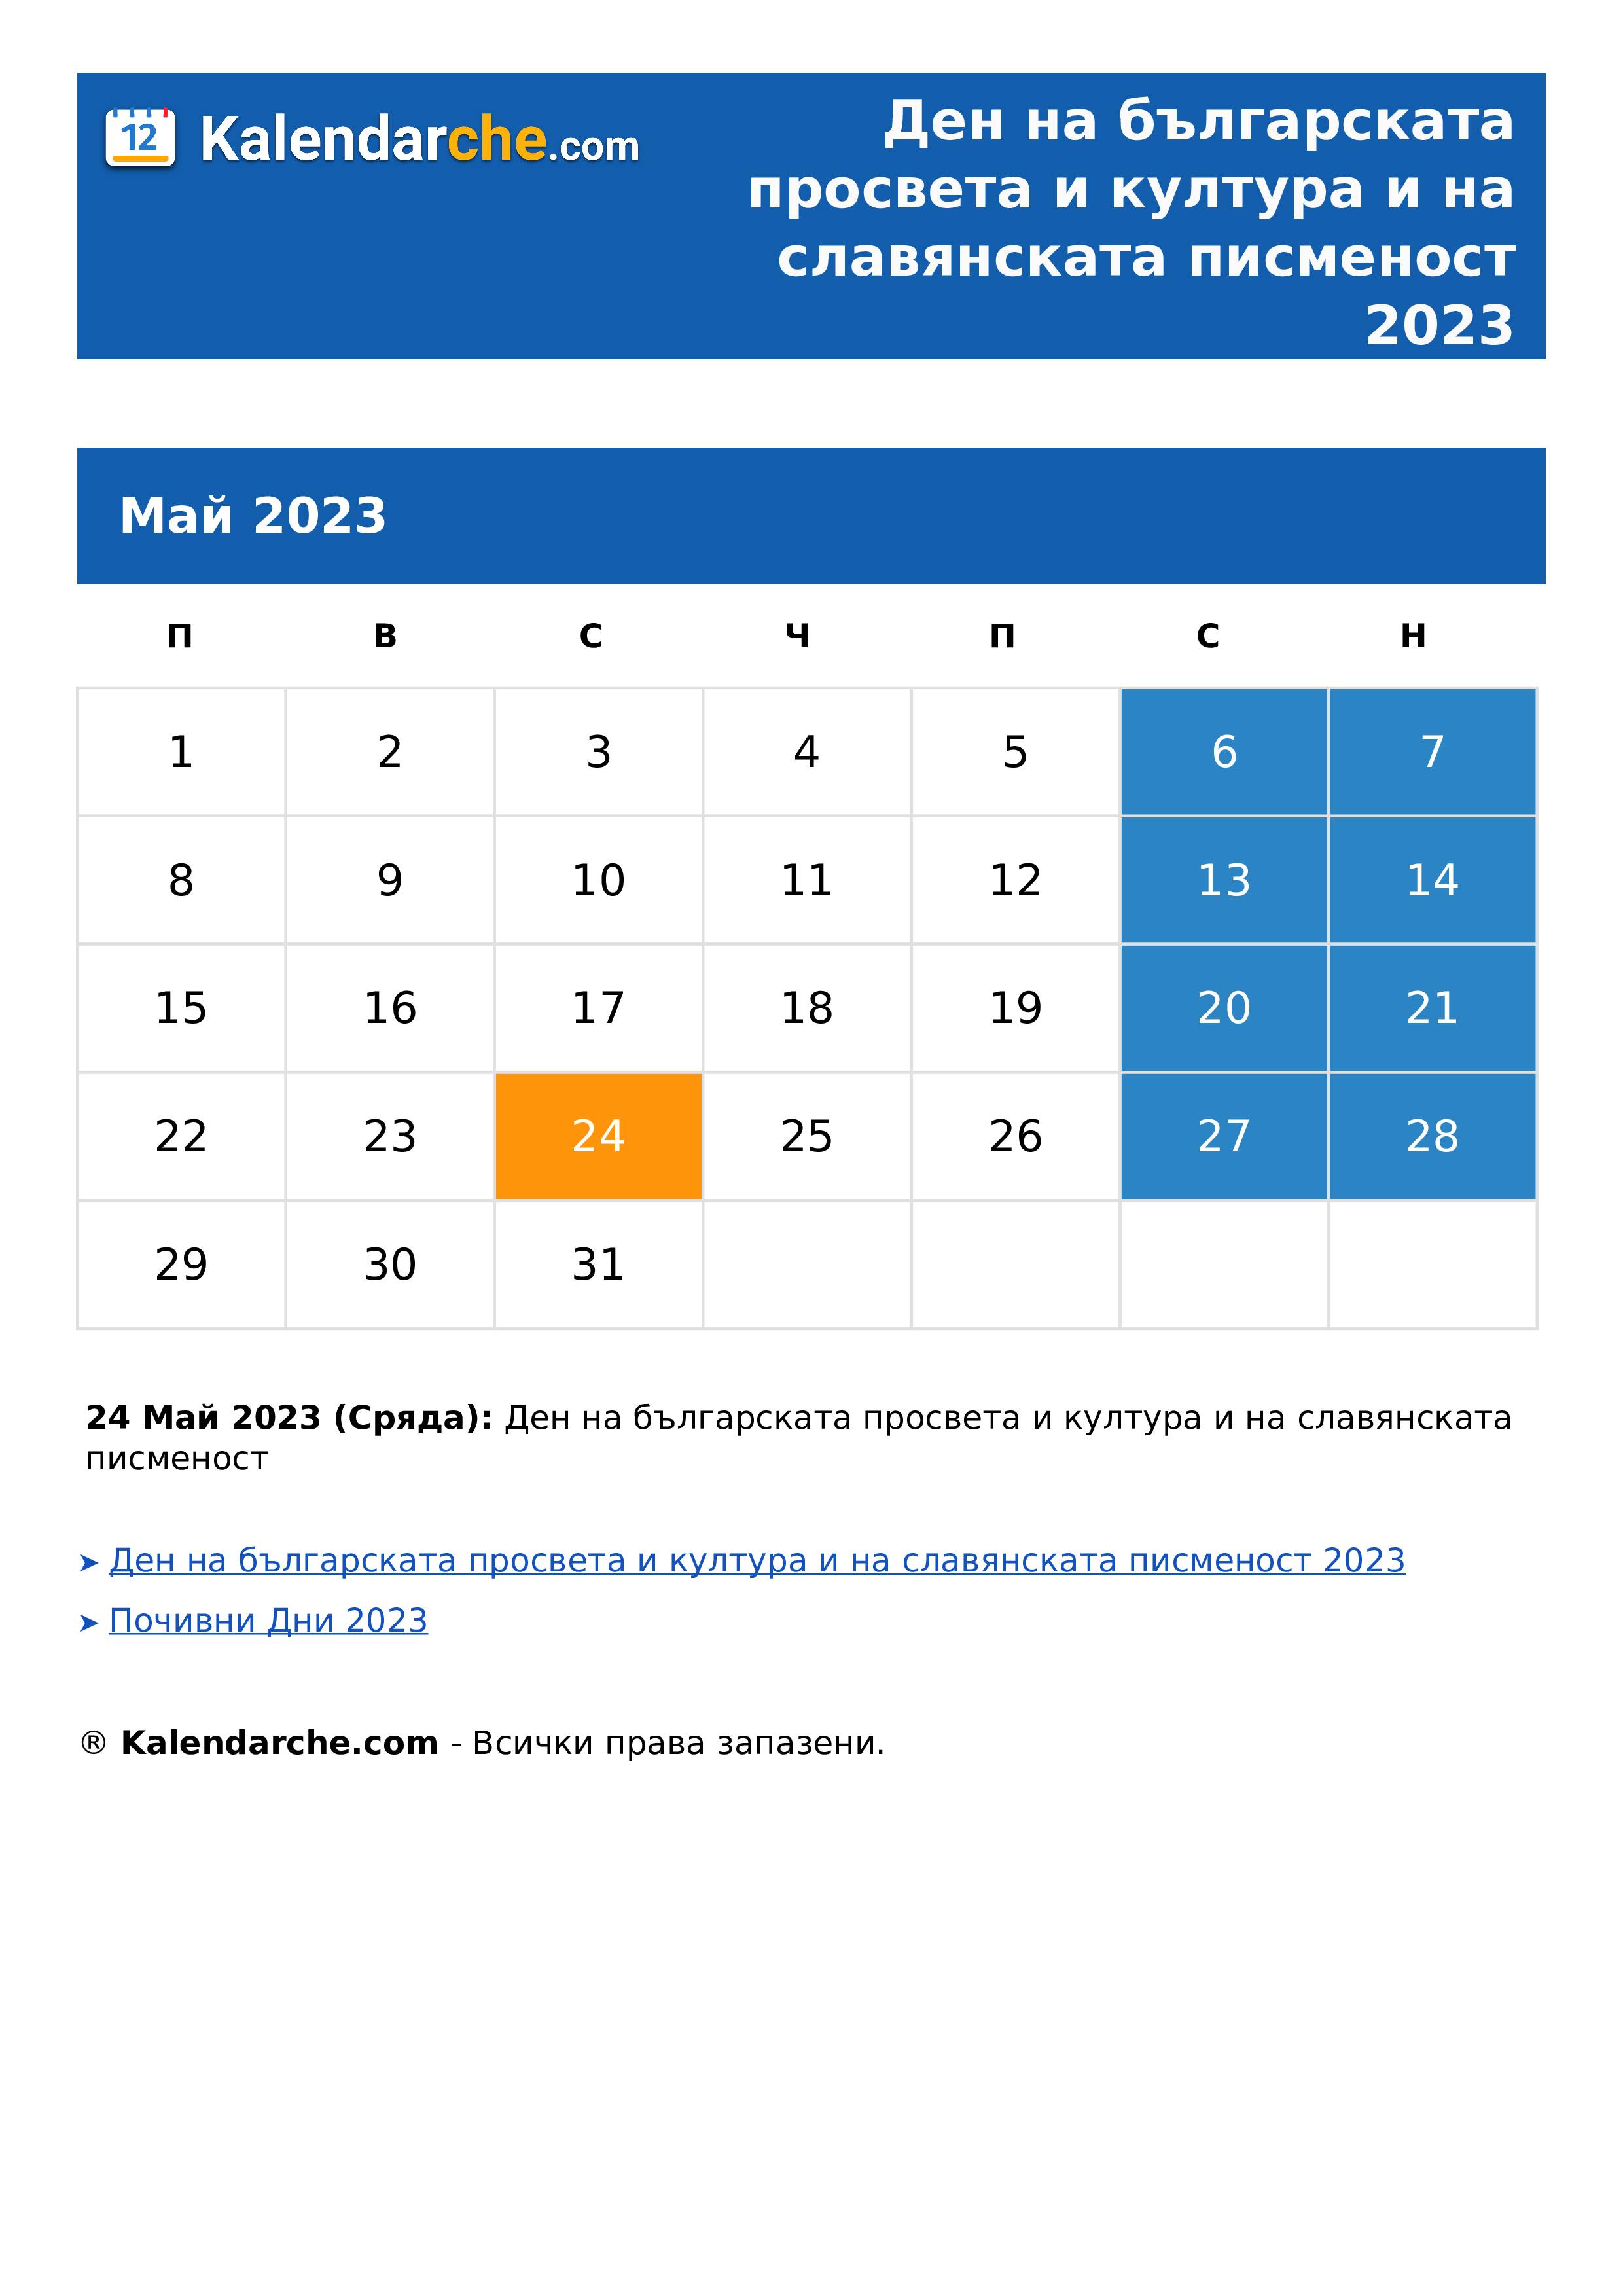 Ден на българската просвета и култура и на славянската писменост 2023